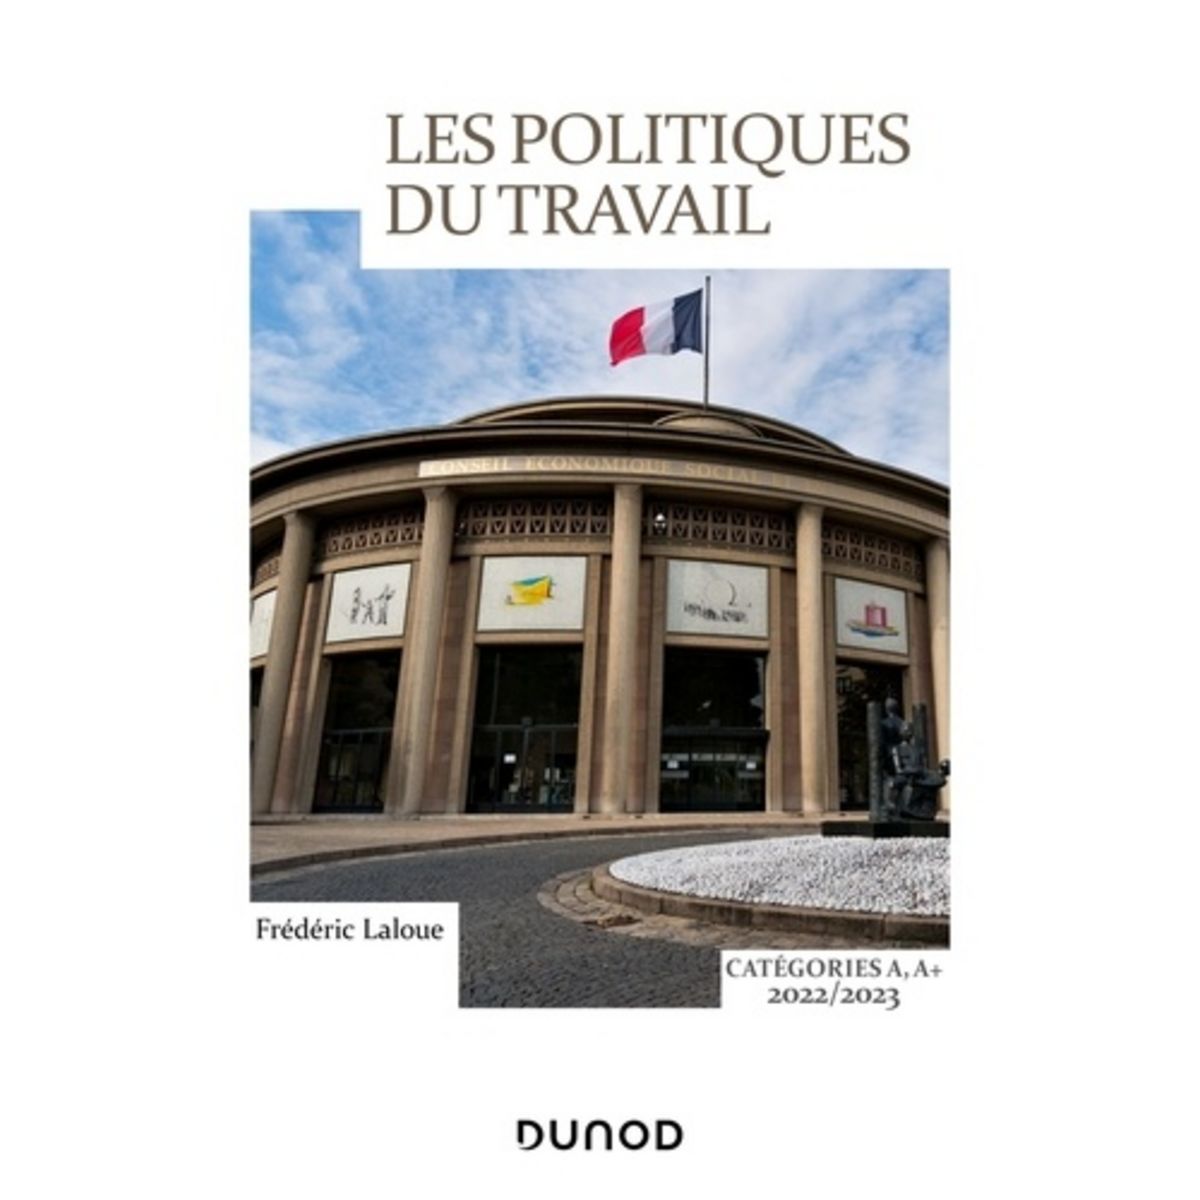  LES POLITIQUES DU TRAVAIL. CATEGORIES A, A+, EDITION 2022-2023, Laloue Frédéric